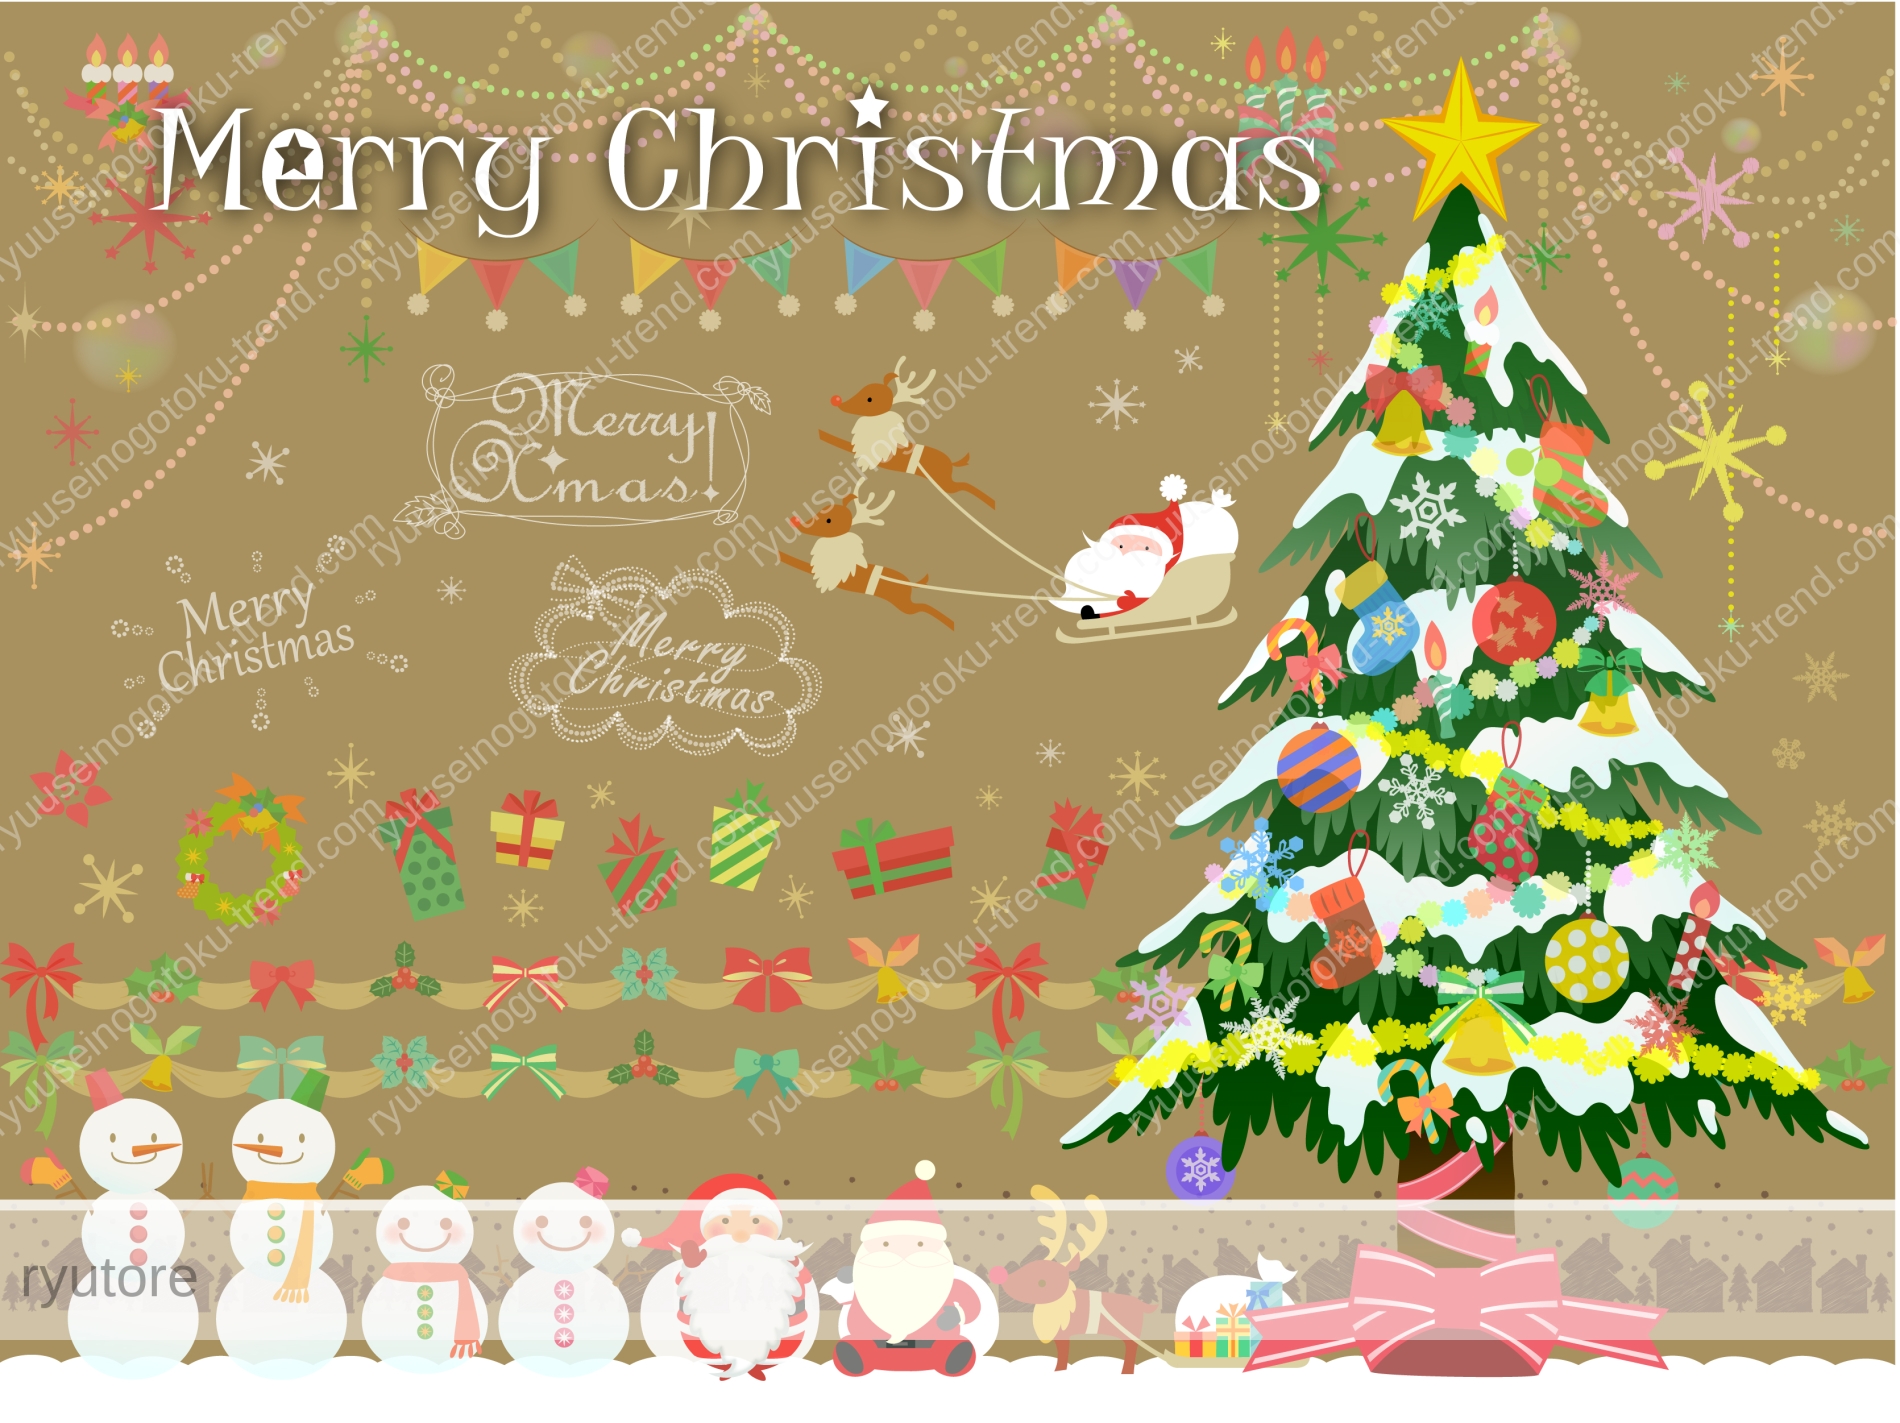 子供へ贈るクリスマスカードのメッセージの例文は 流星の如くトレンド 雑学エンタメ行事最新ニュース情報ブログ